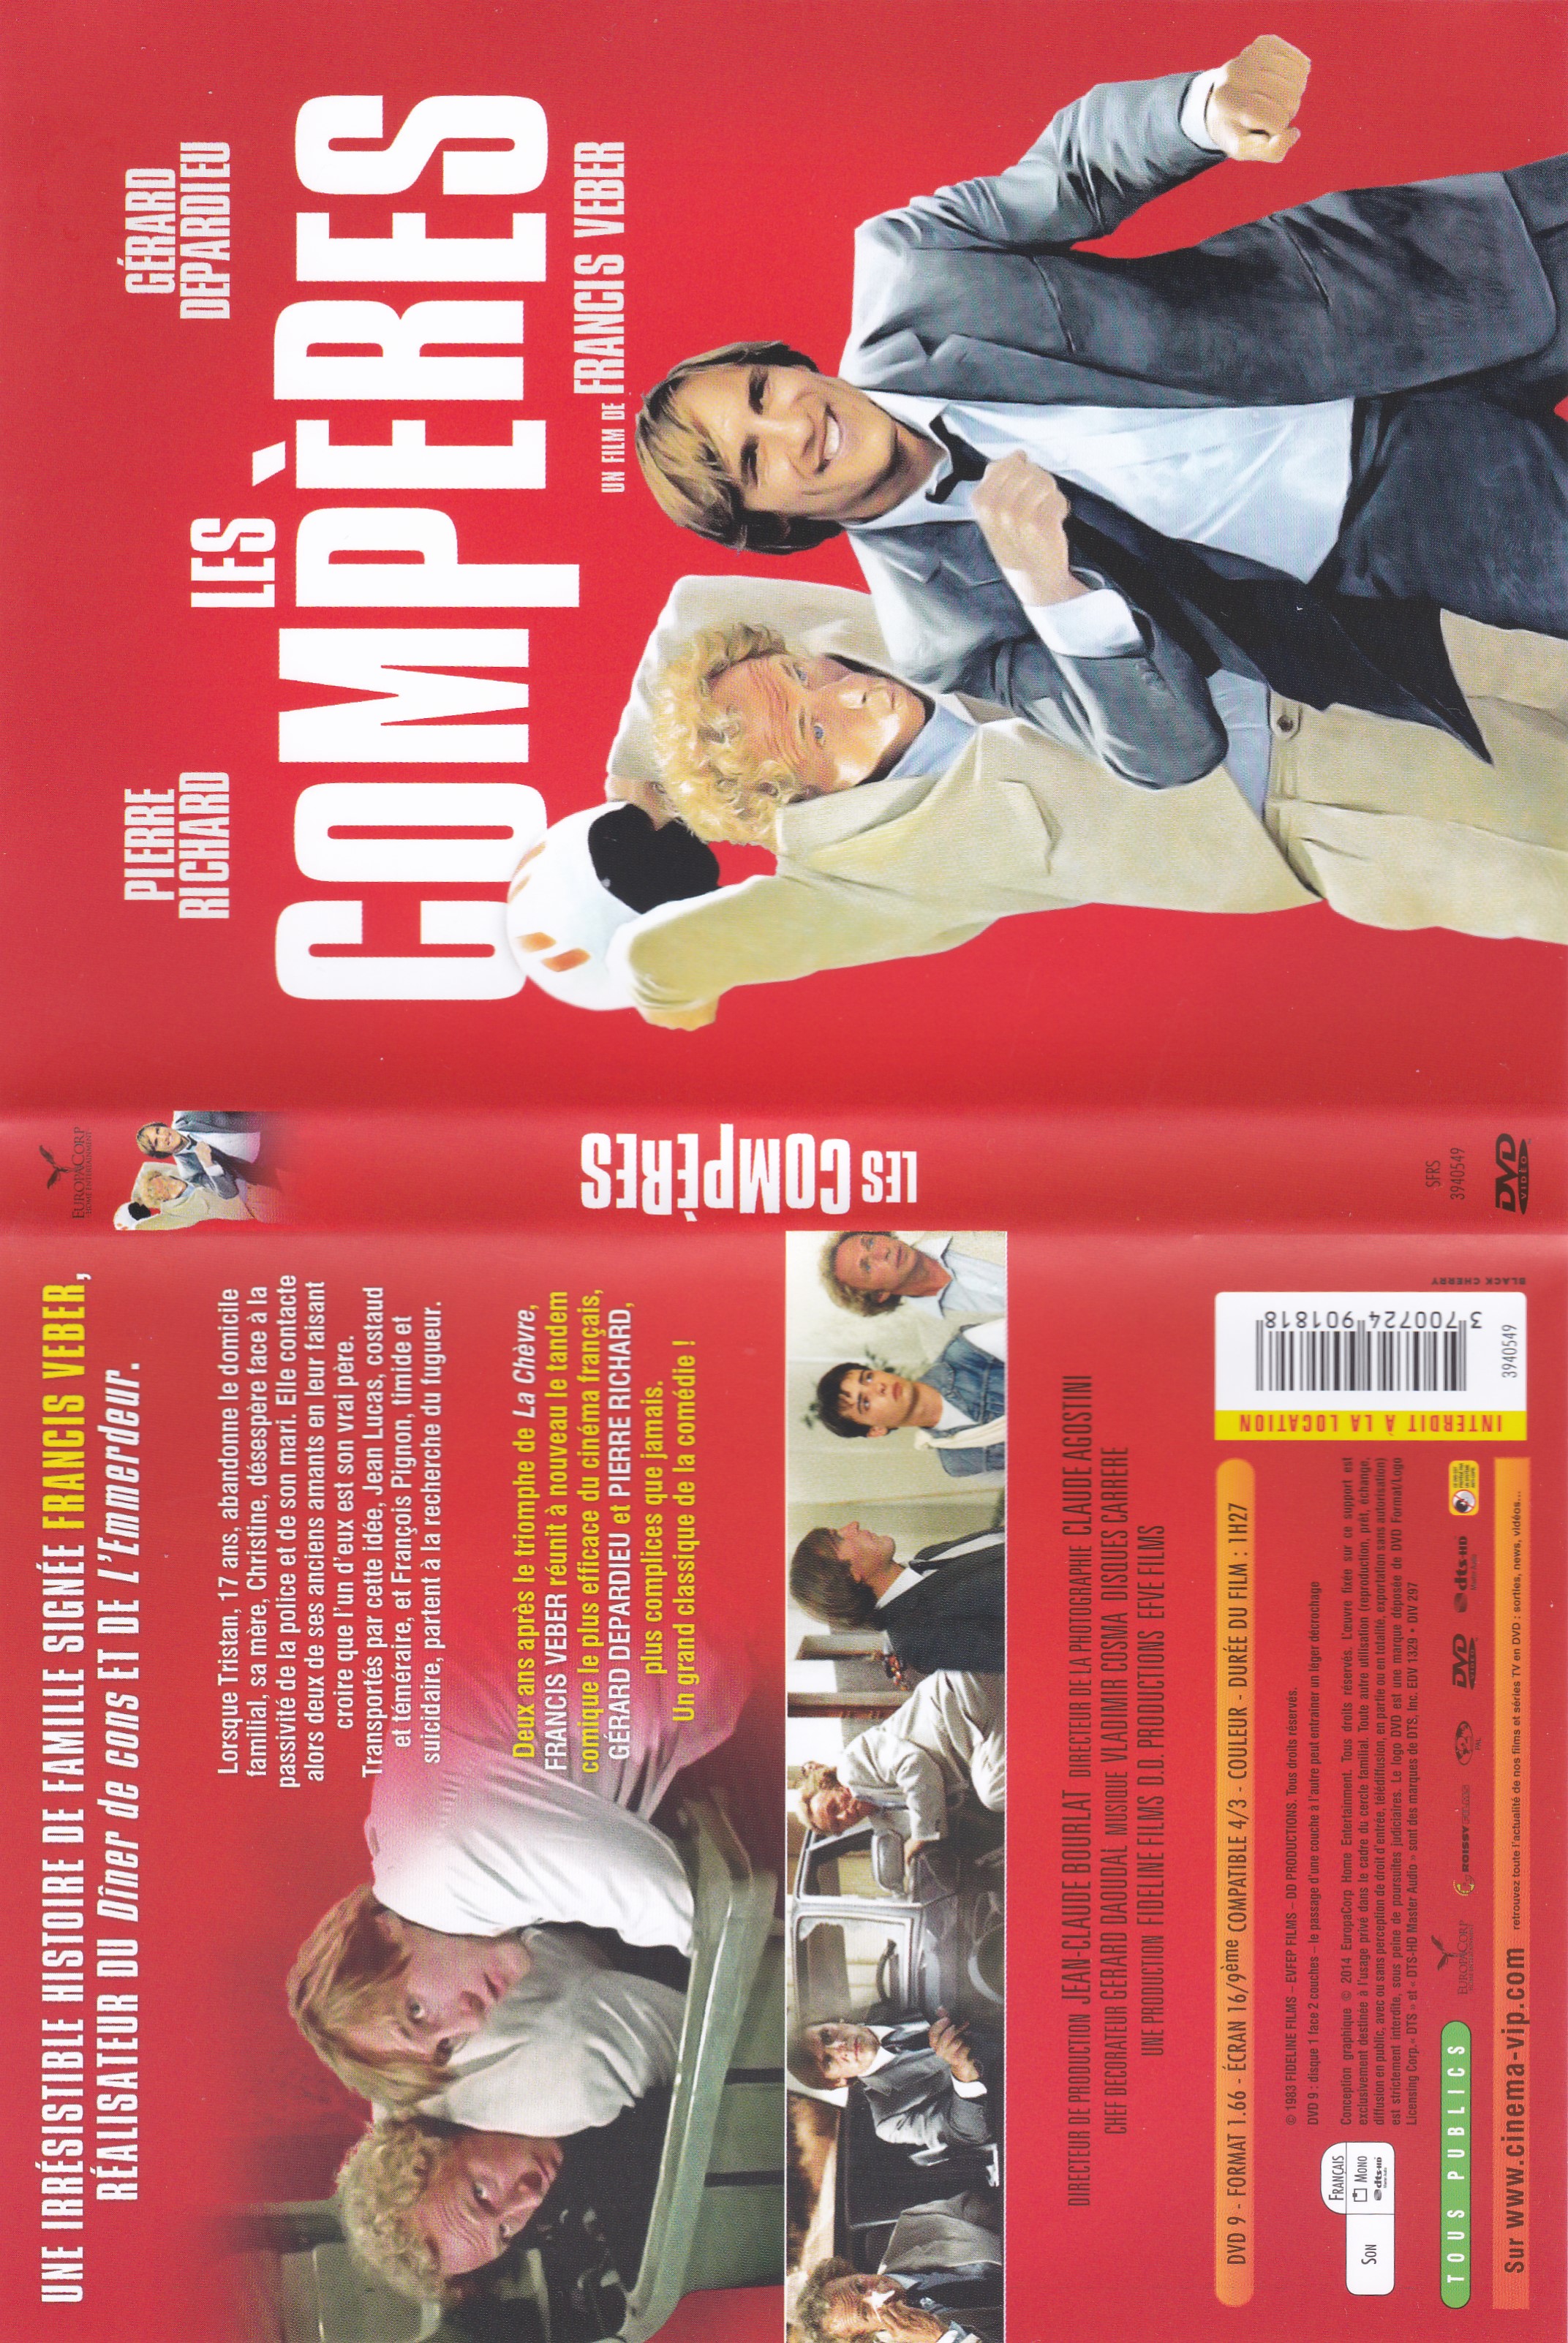 Jaquette DVD Les compres v3